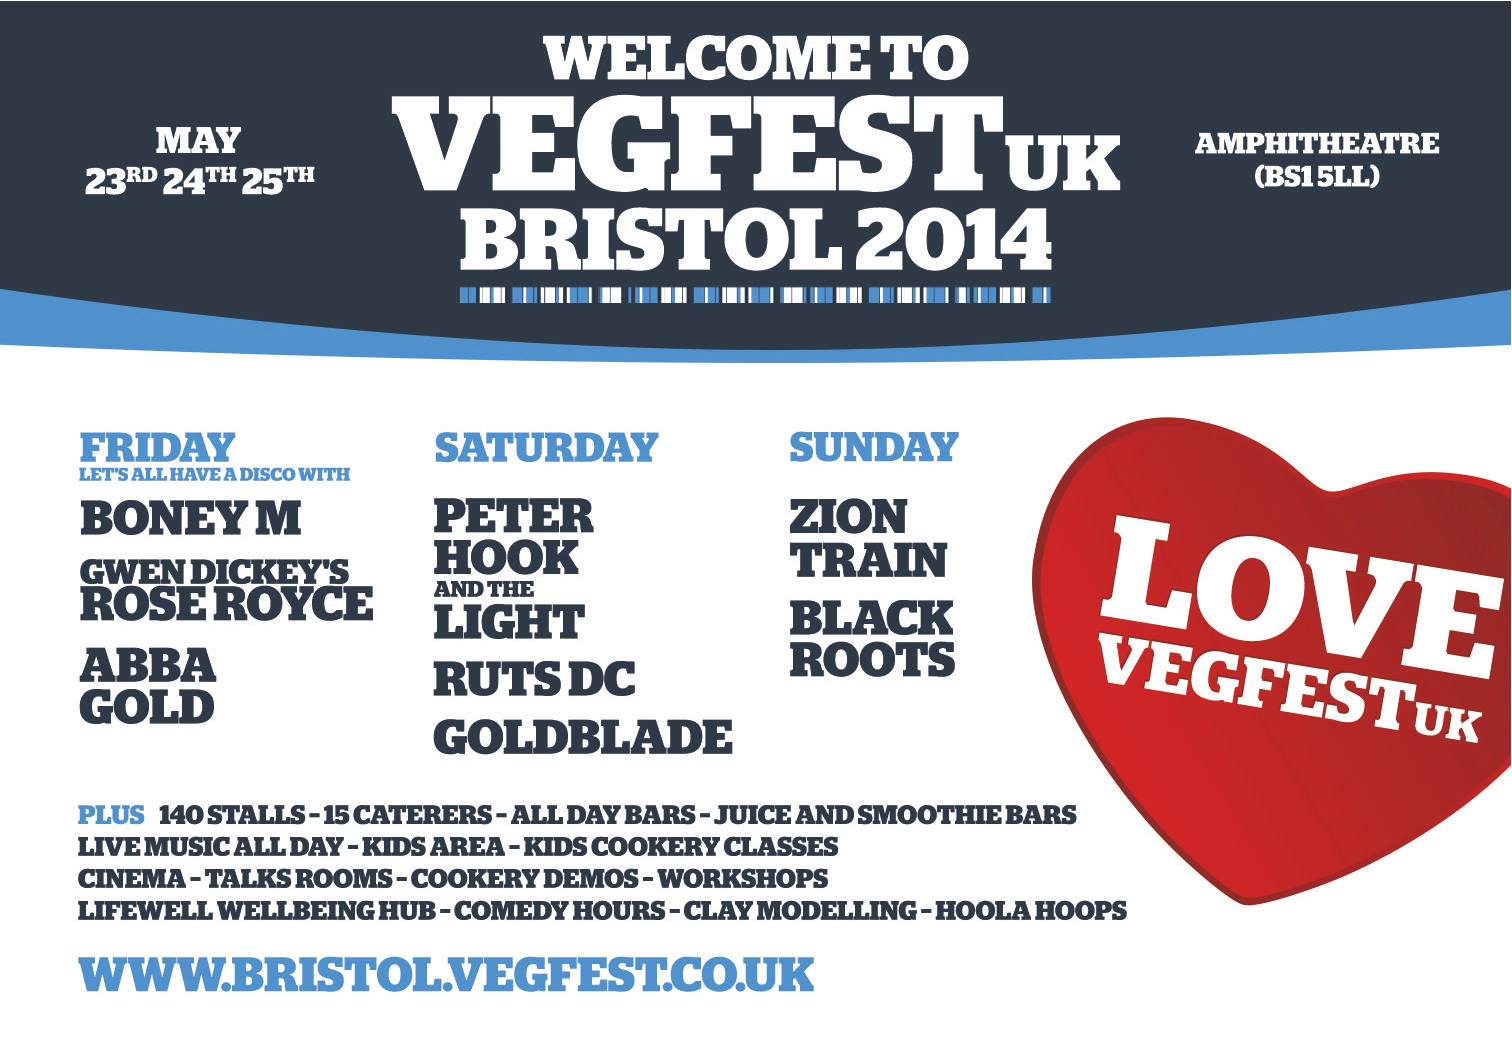 Vegfest Bristol 2014